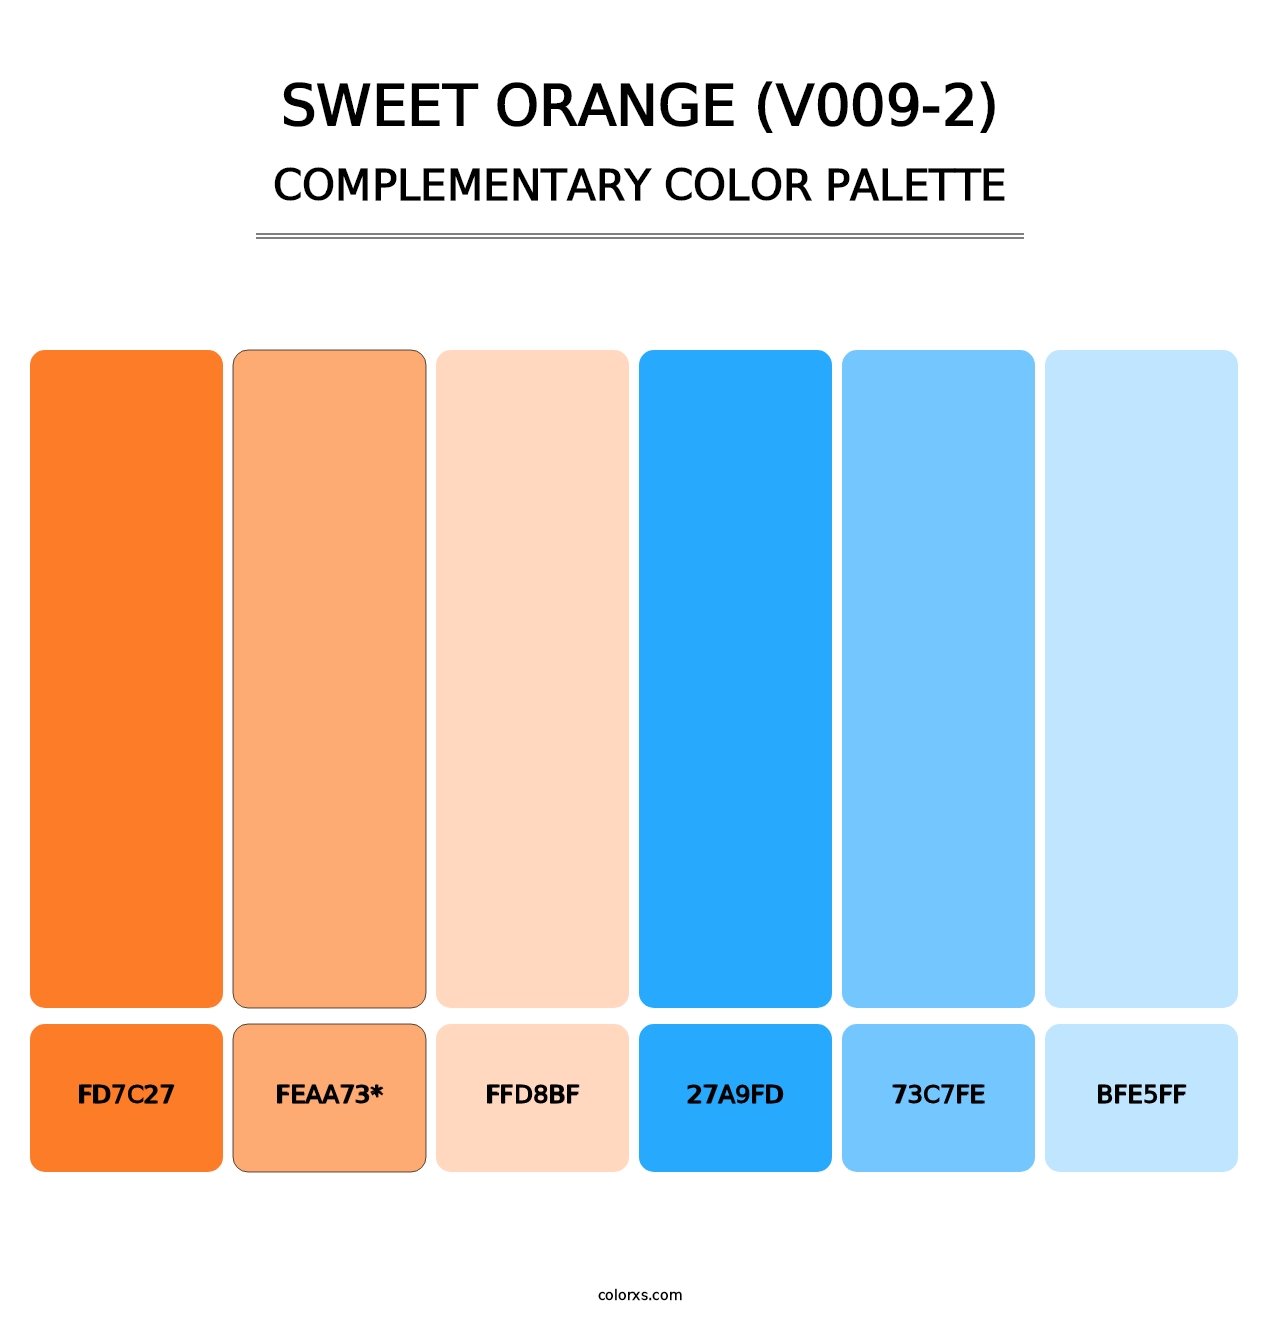 Sweet Orange (V009-2) - Complementary Color Palette